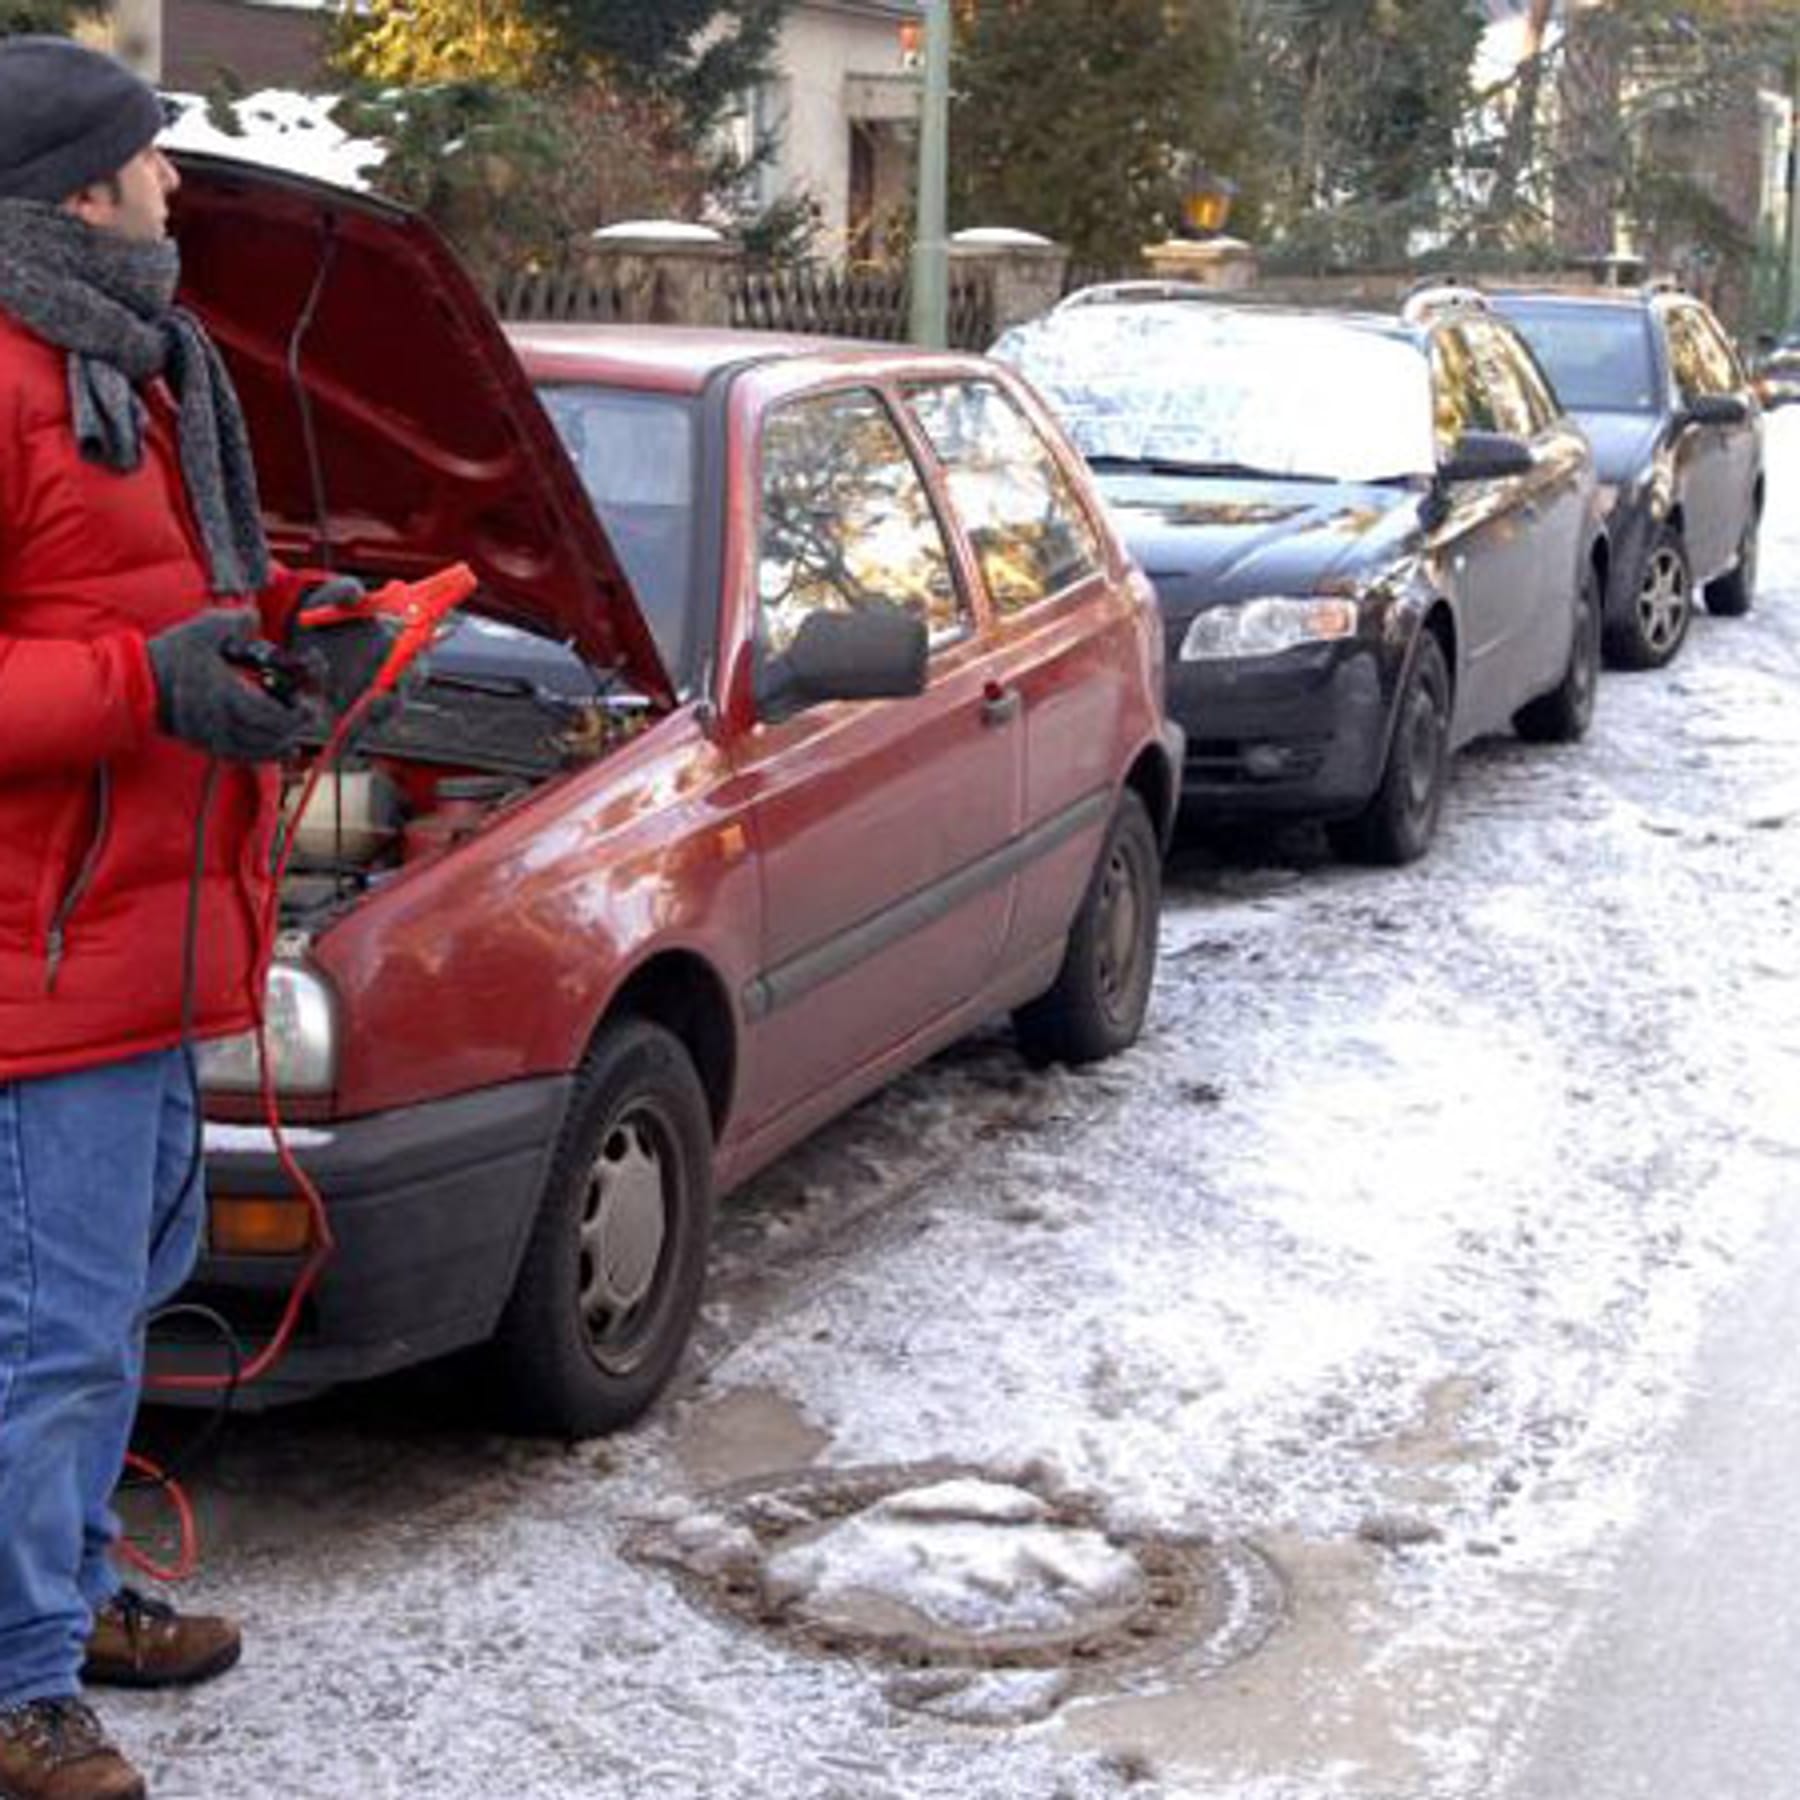 Auto im Schnee festgefahren – was tun?